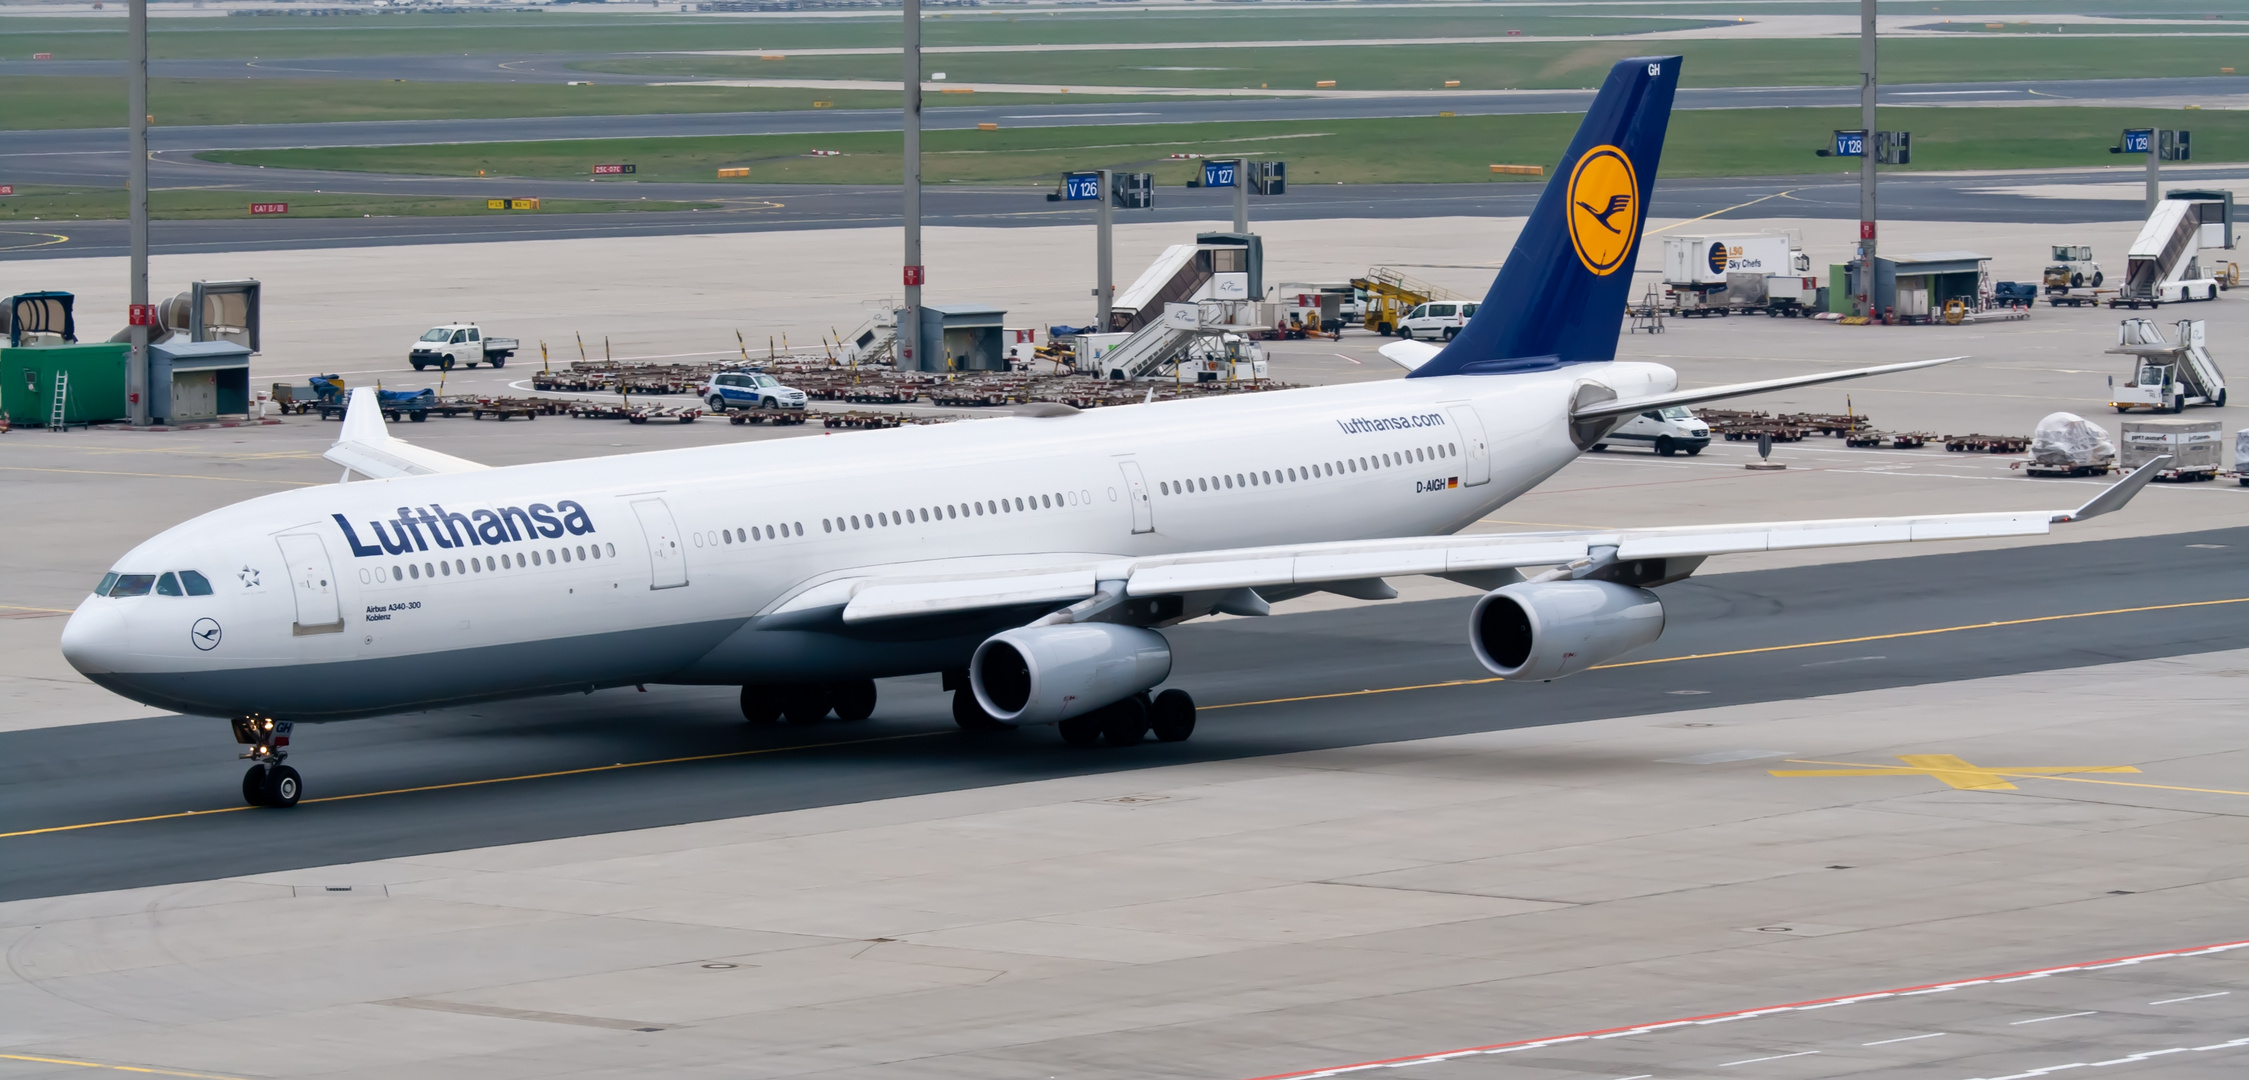 Lufthansa A340 "Koblenz"